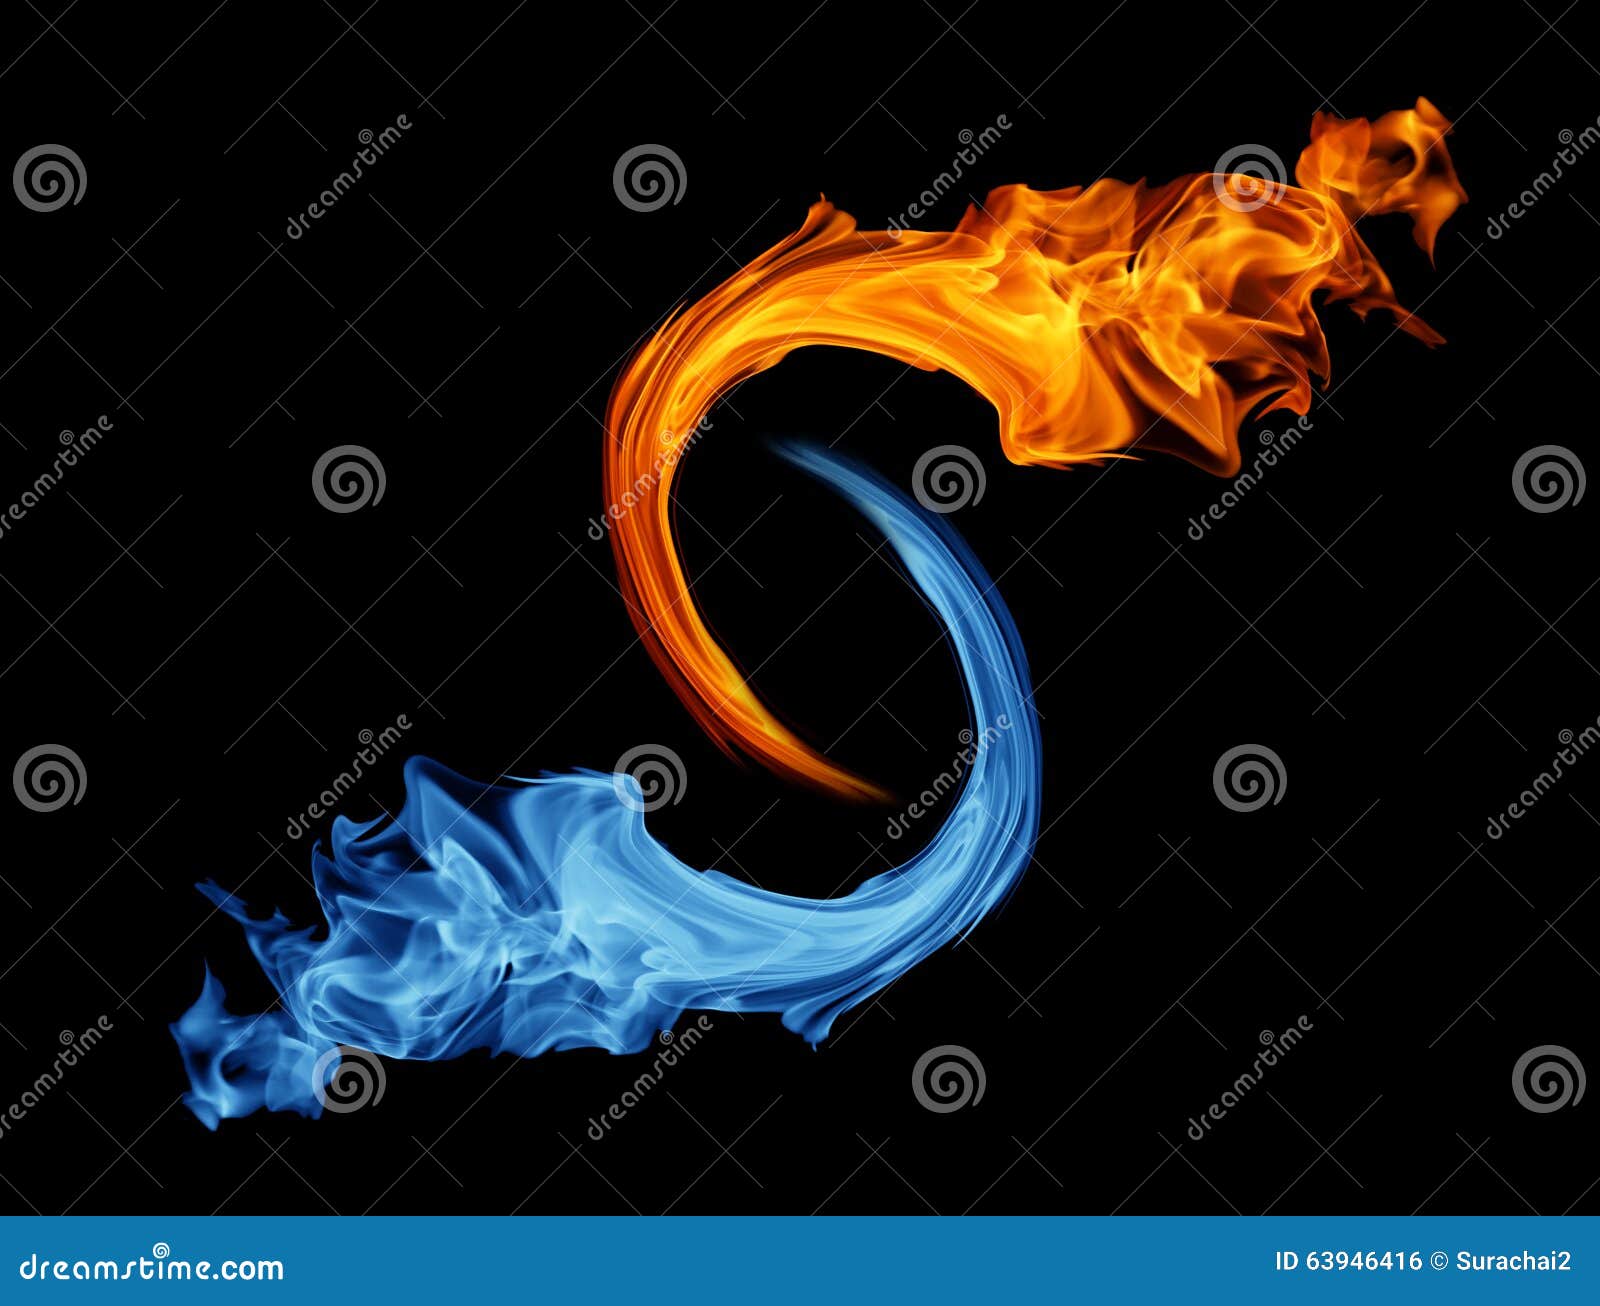 Fogo e água - conceito yin yang - símbolo tao fotos, imagens de © rfphoto  #81539246